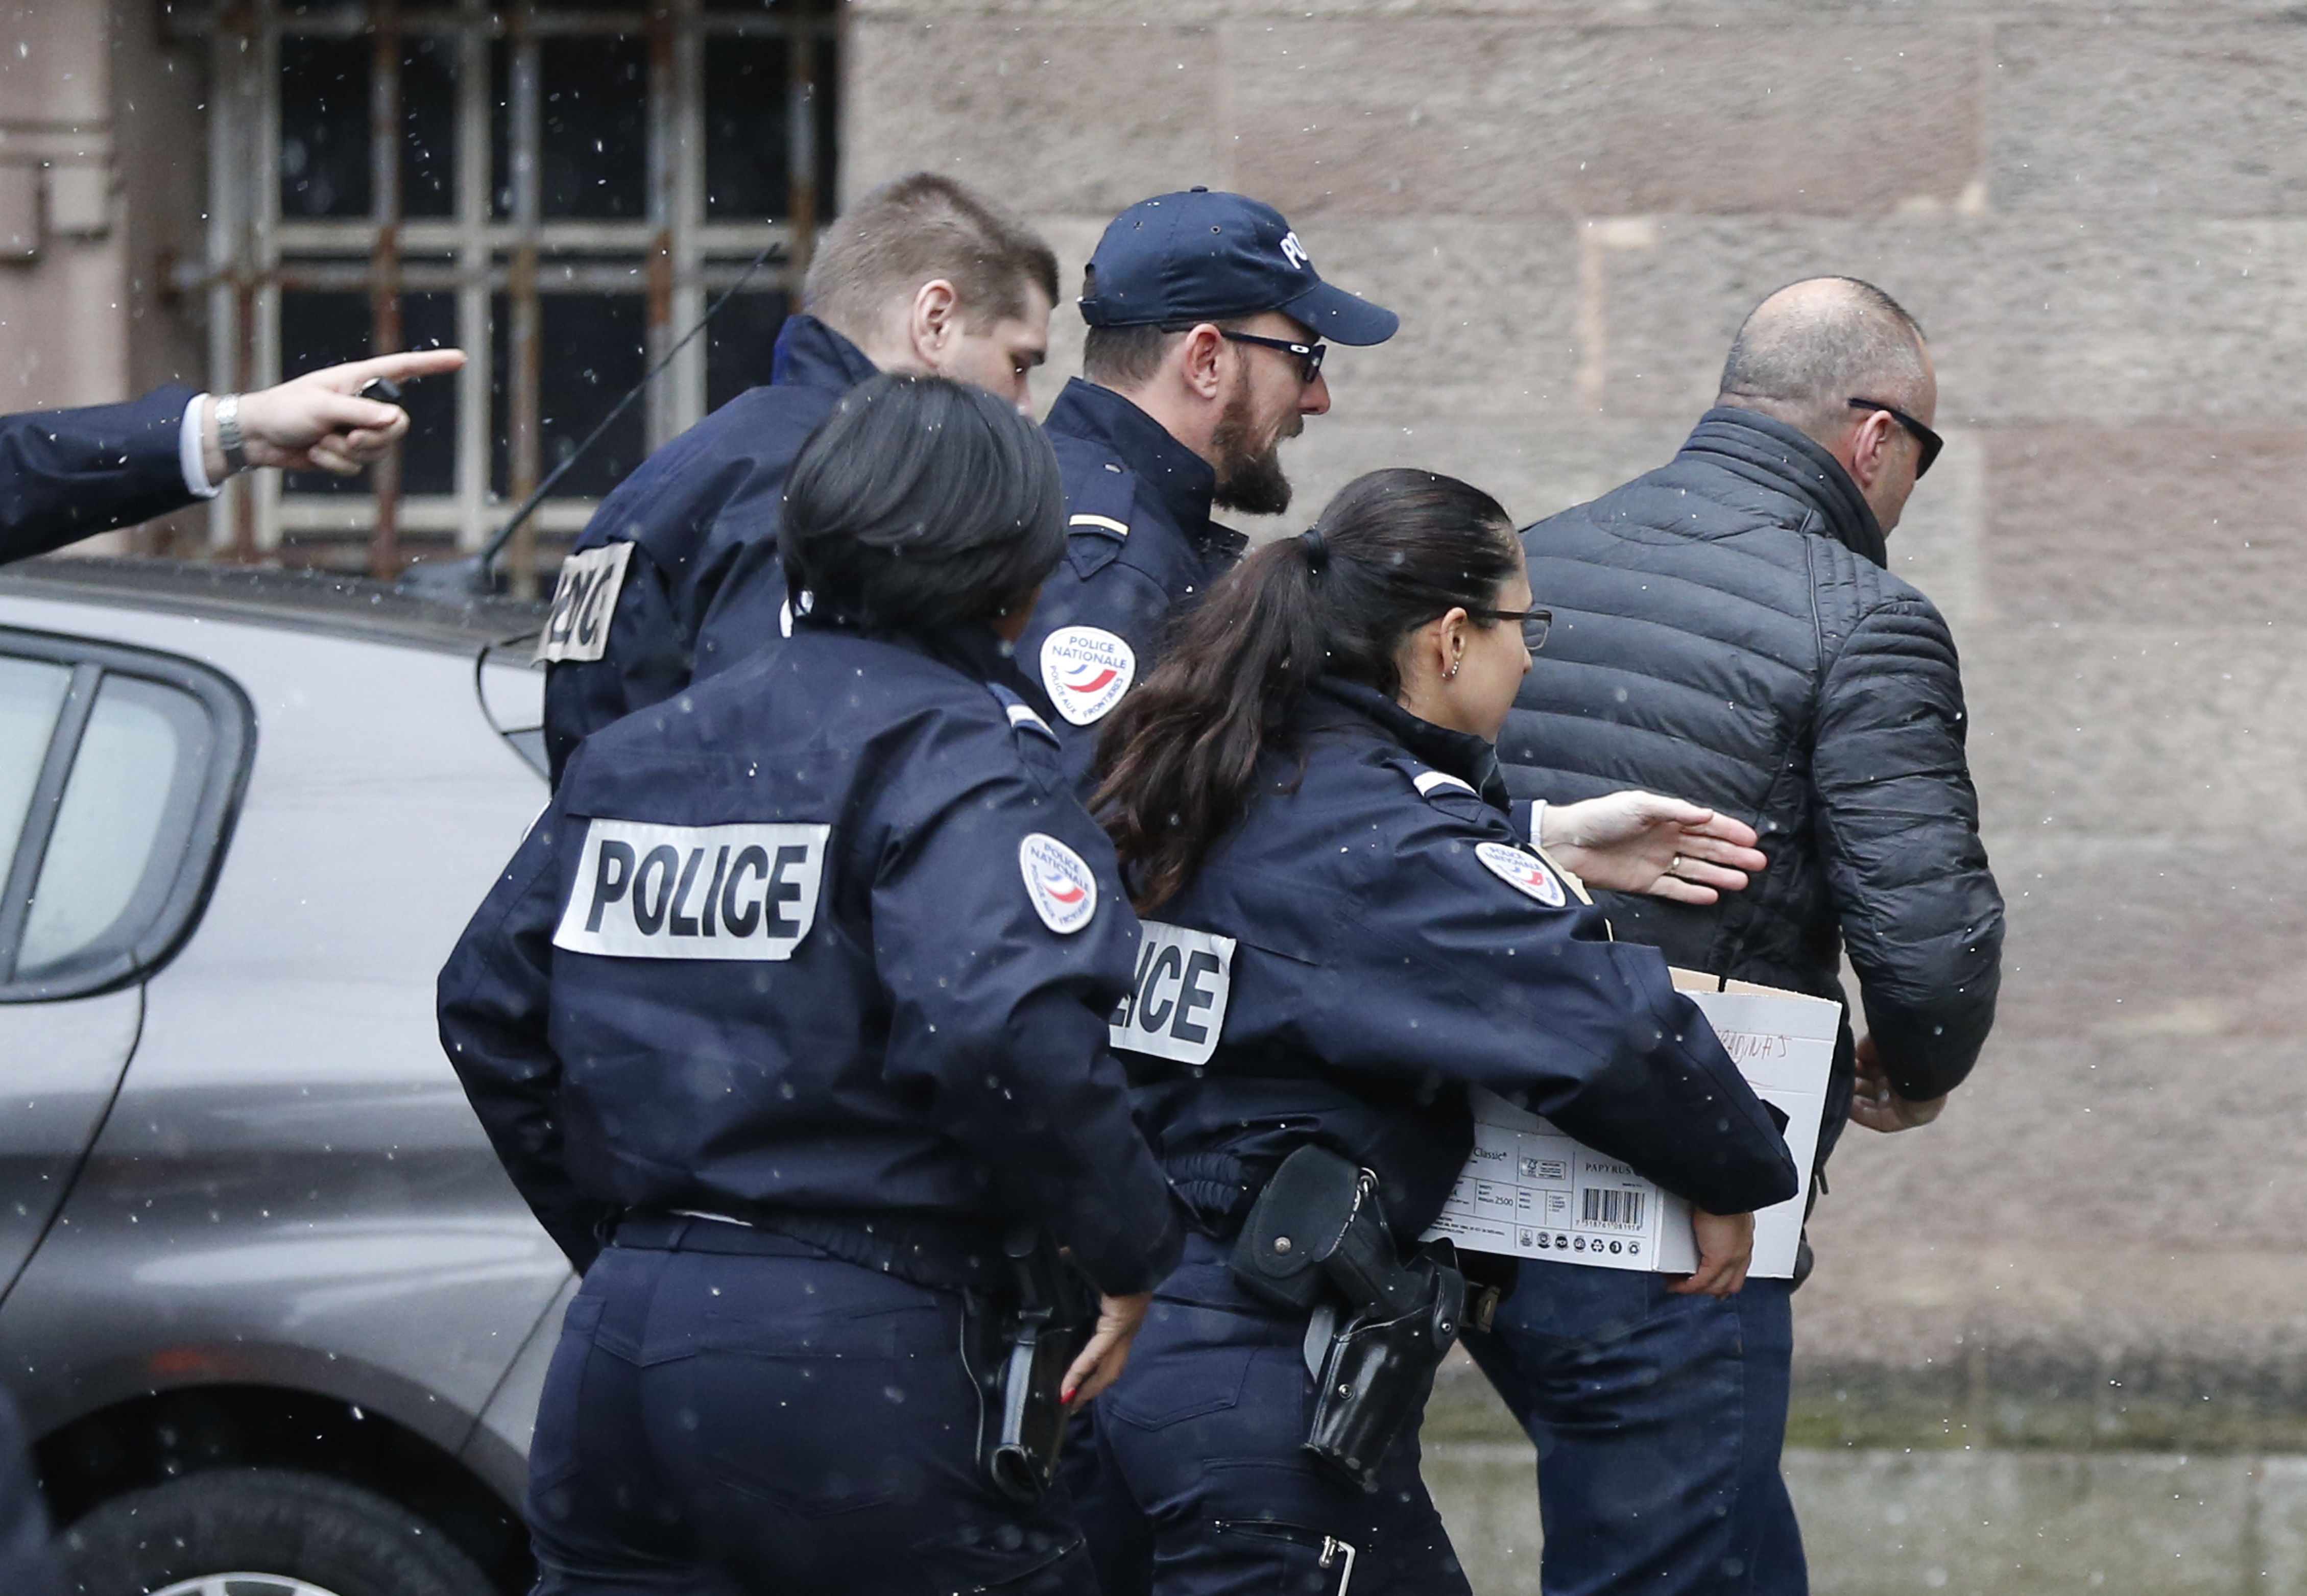 Рамуш Харадинай е бил задържан на летище Базел-Мюлуз в Източна Франция